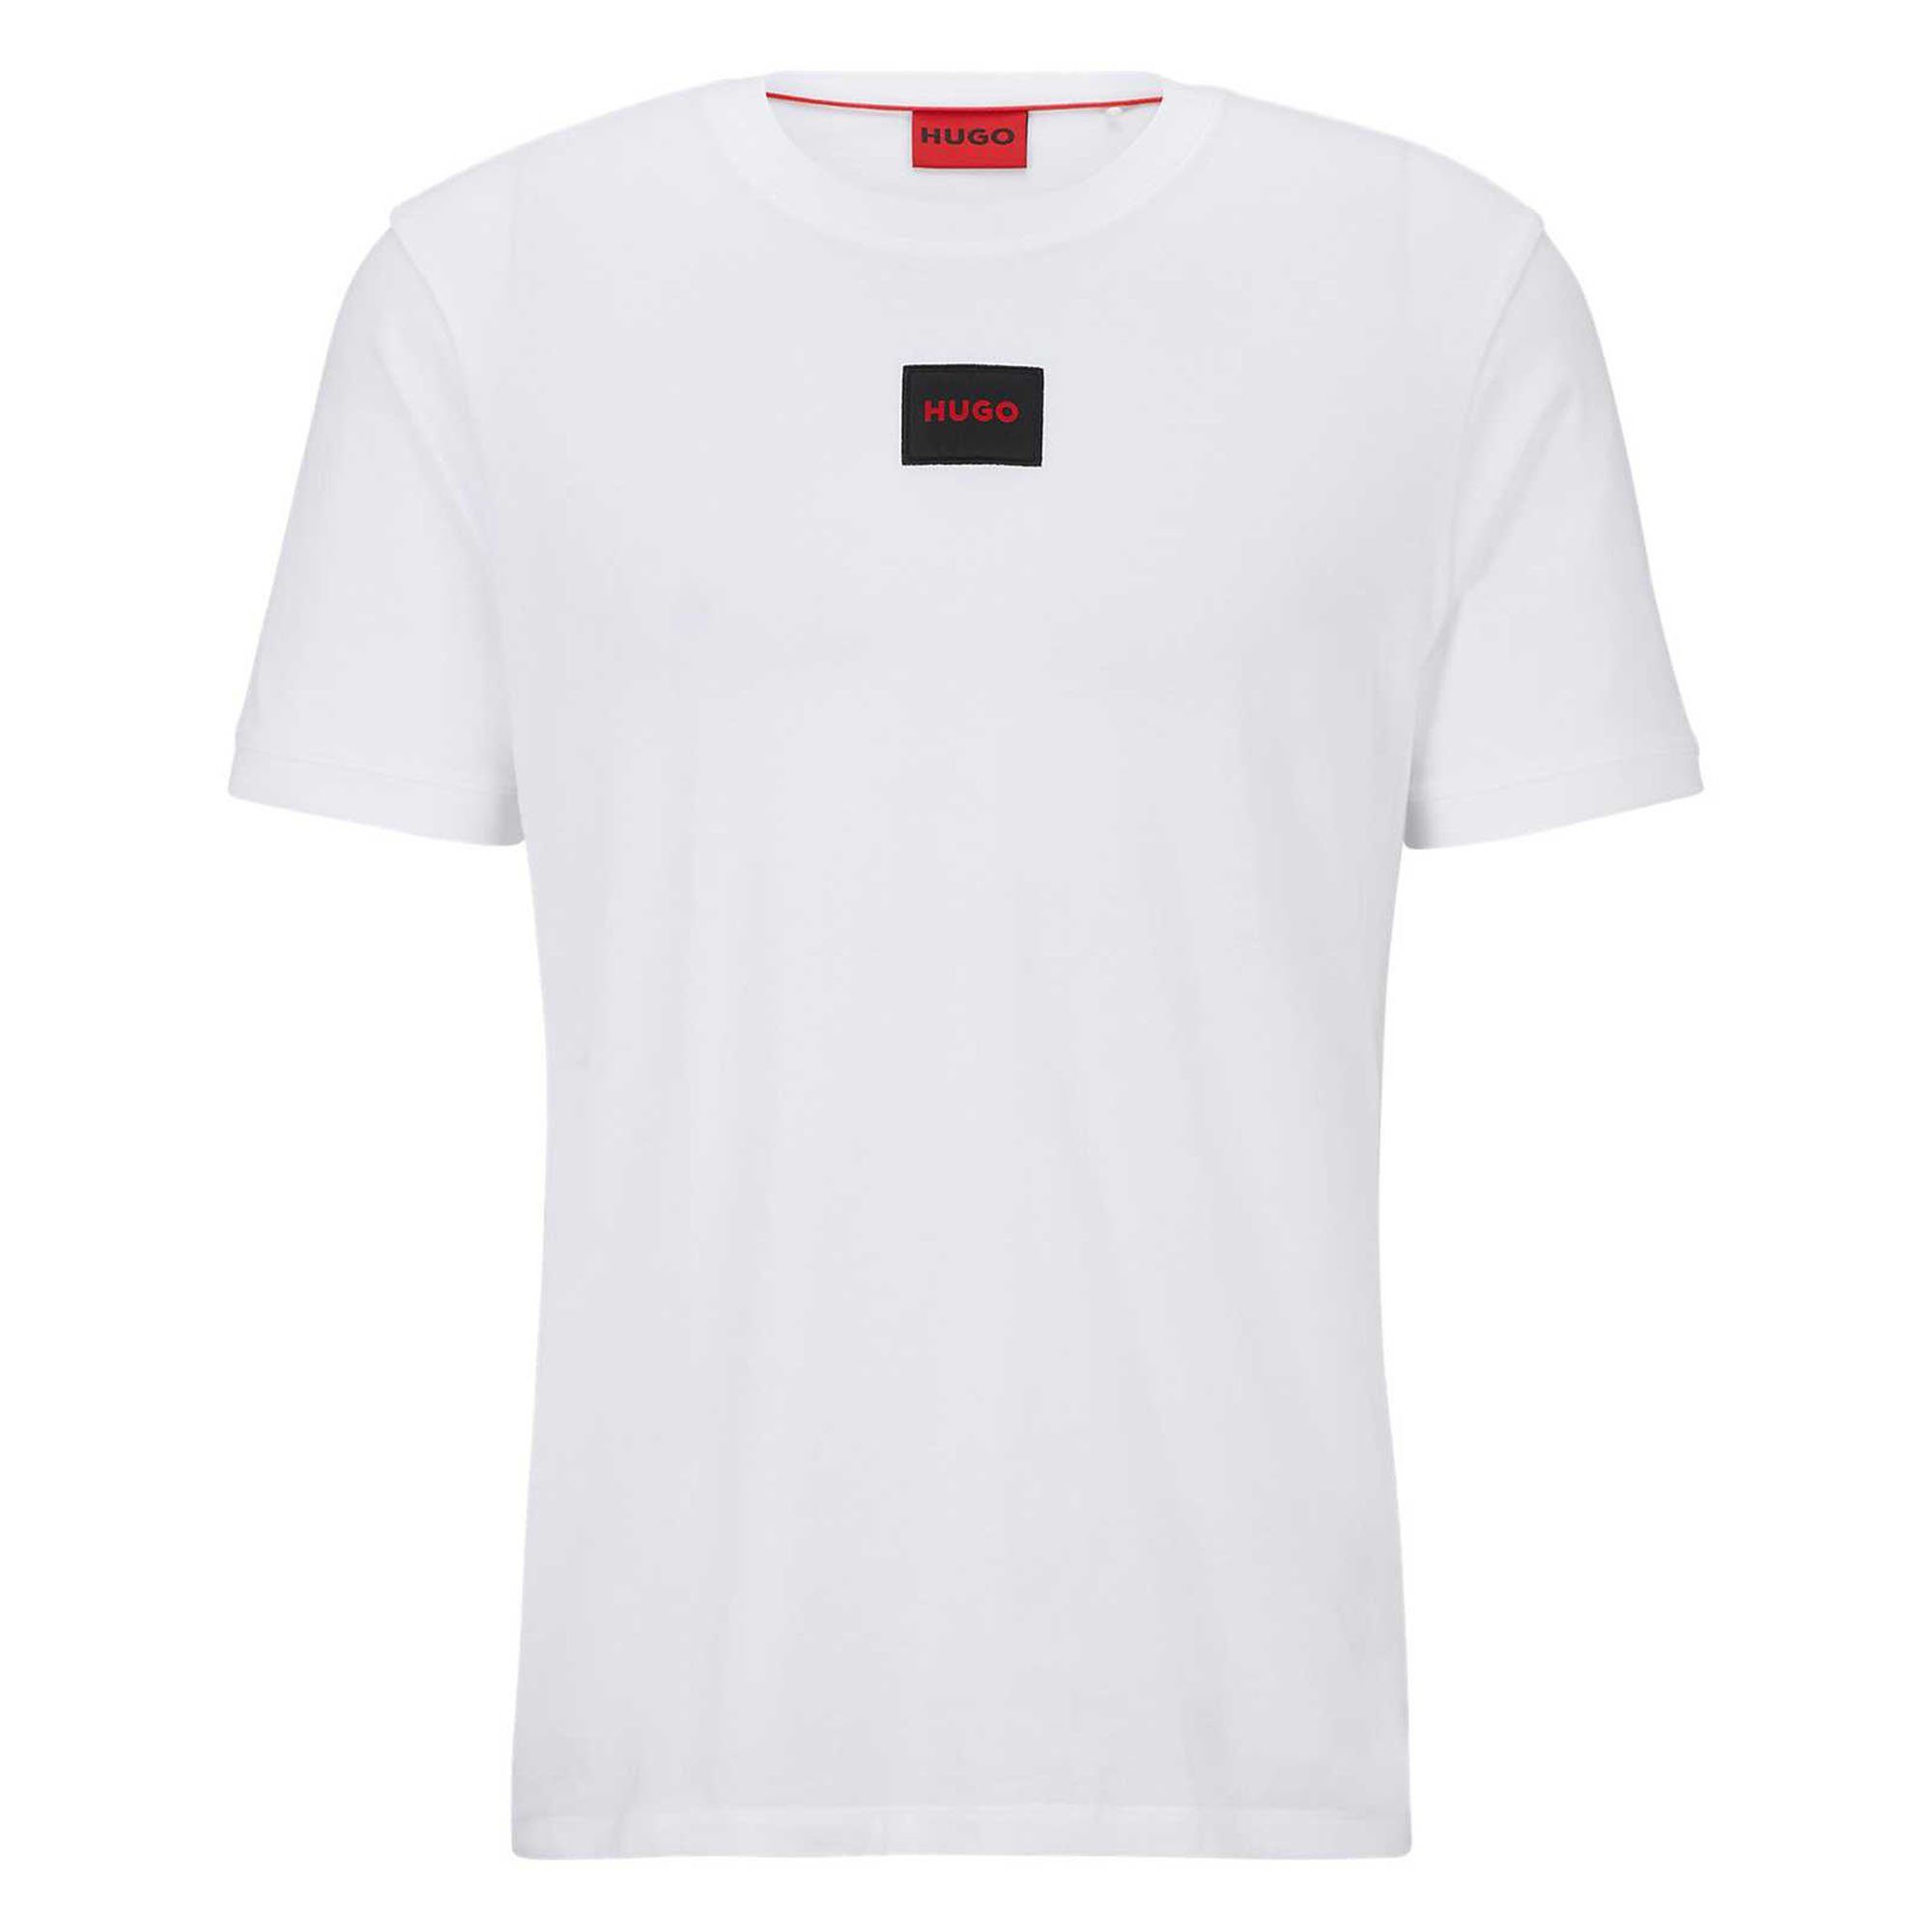 HUGO T-Shirt Herren T-Shirt - Diragolino212 Rundhals Weiß (Open White)